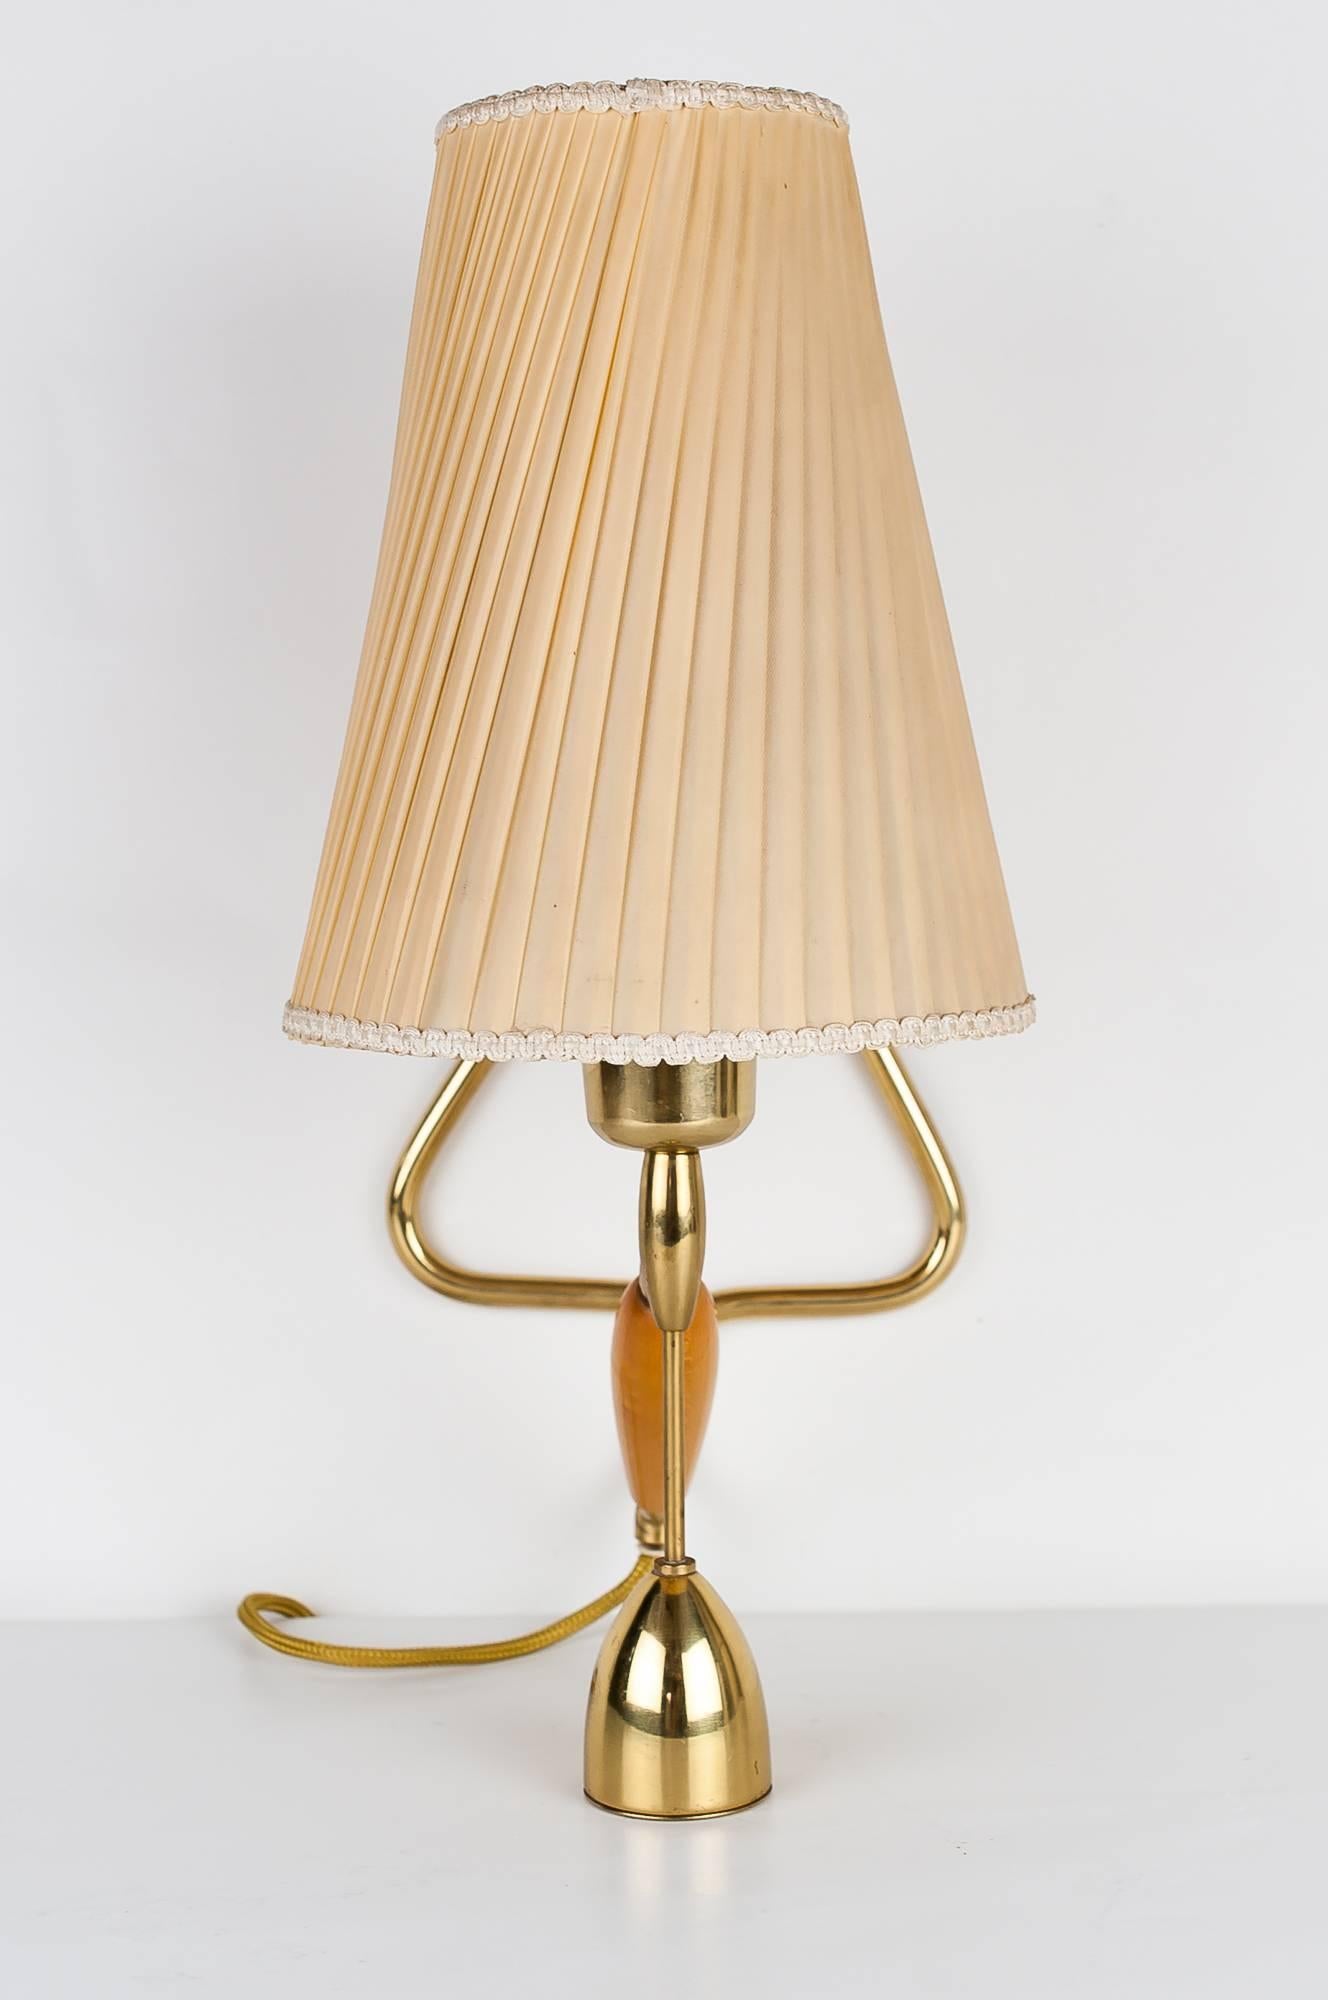 Brass Rupert Nikoll Table or Wall Lamp